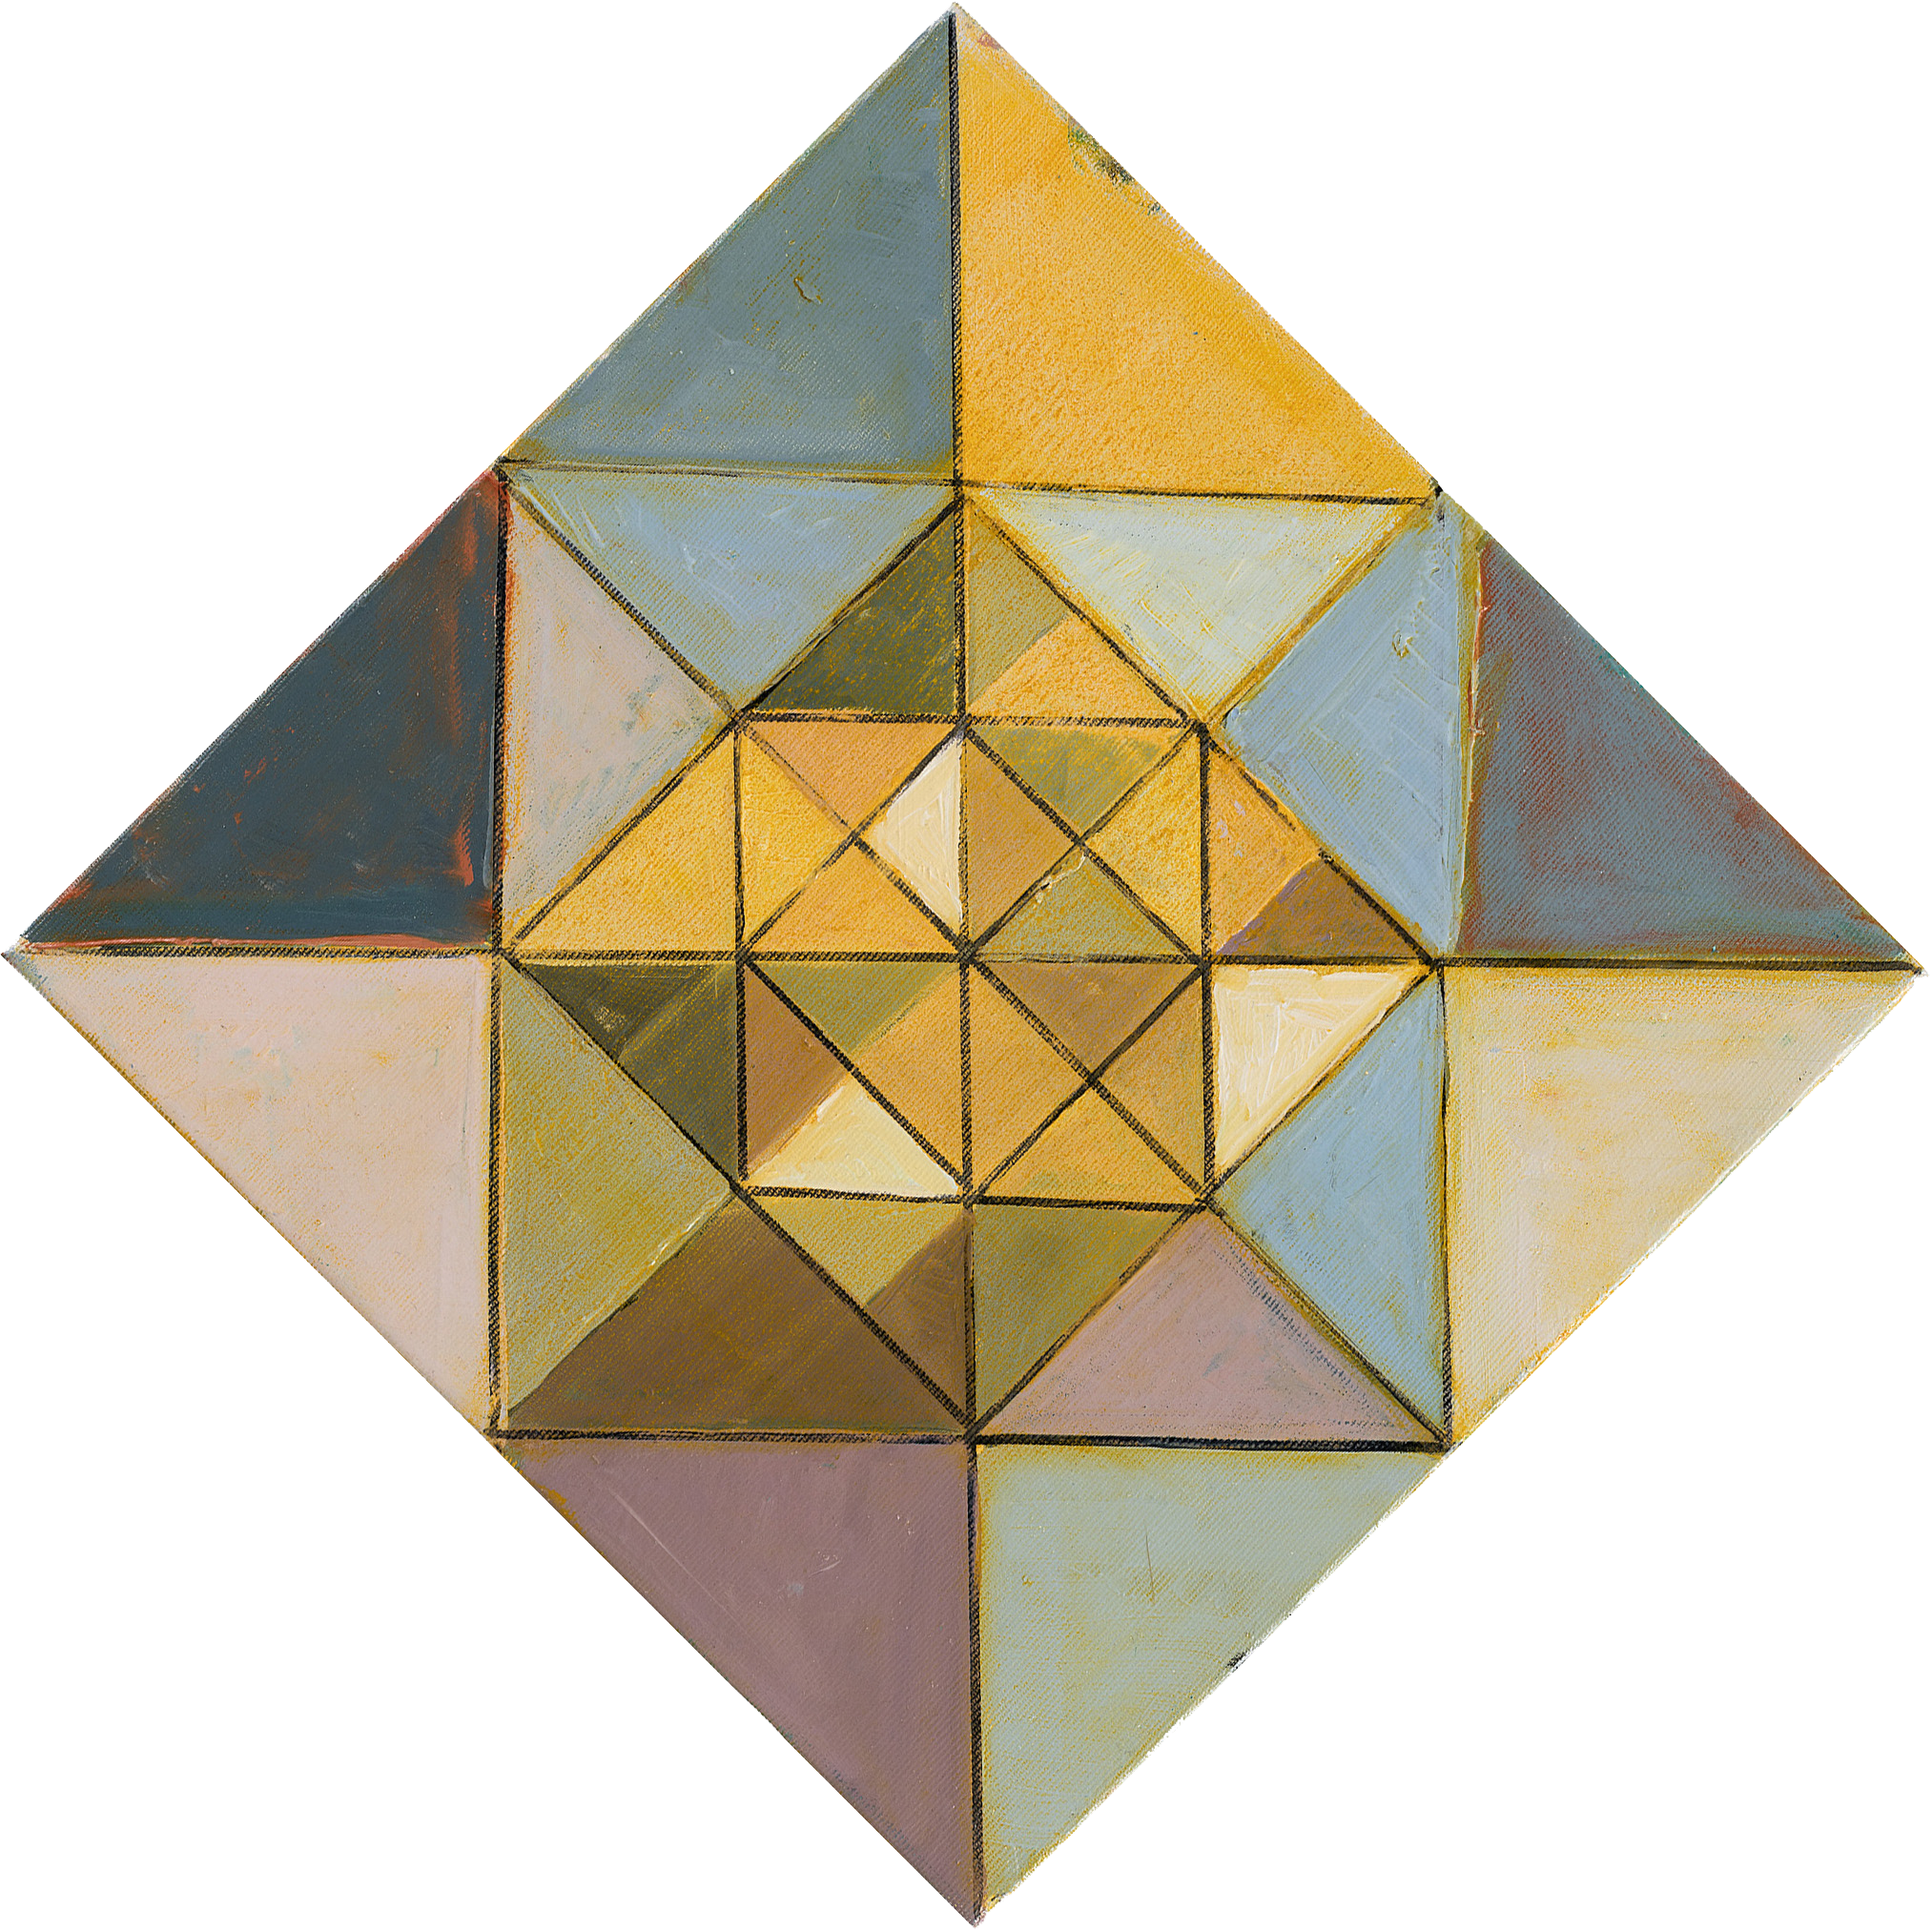 "Star IV",
Oil on canvas,
30x30 cm